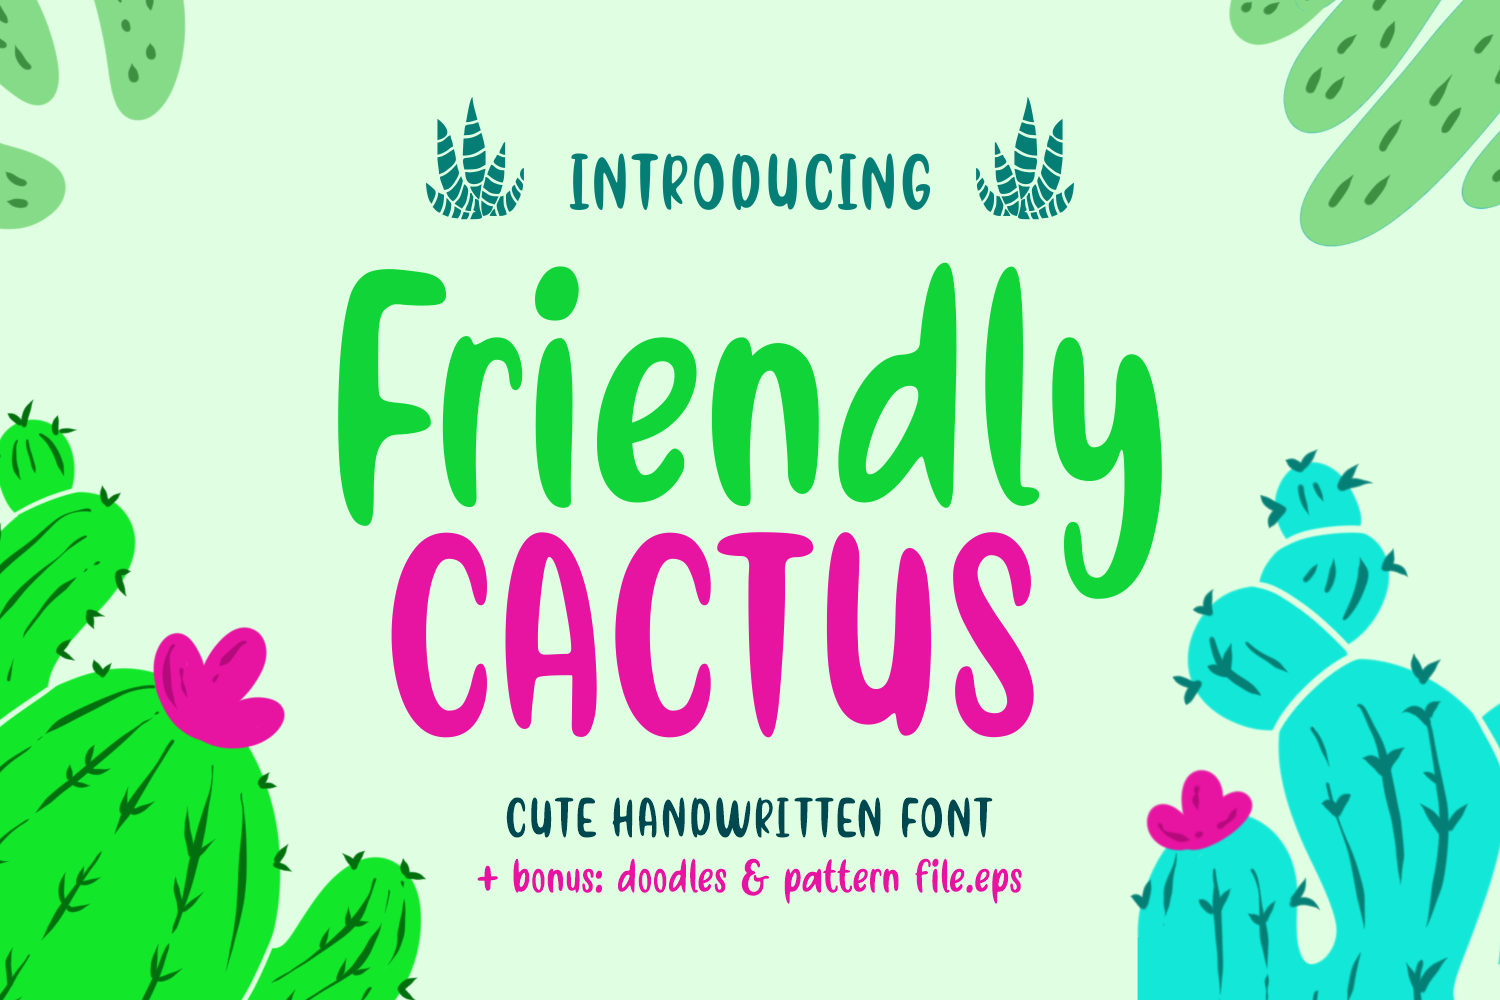 Friendly Cactus Font